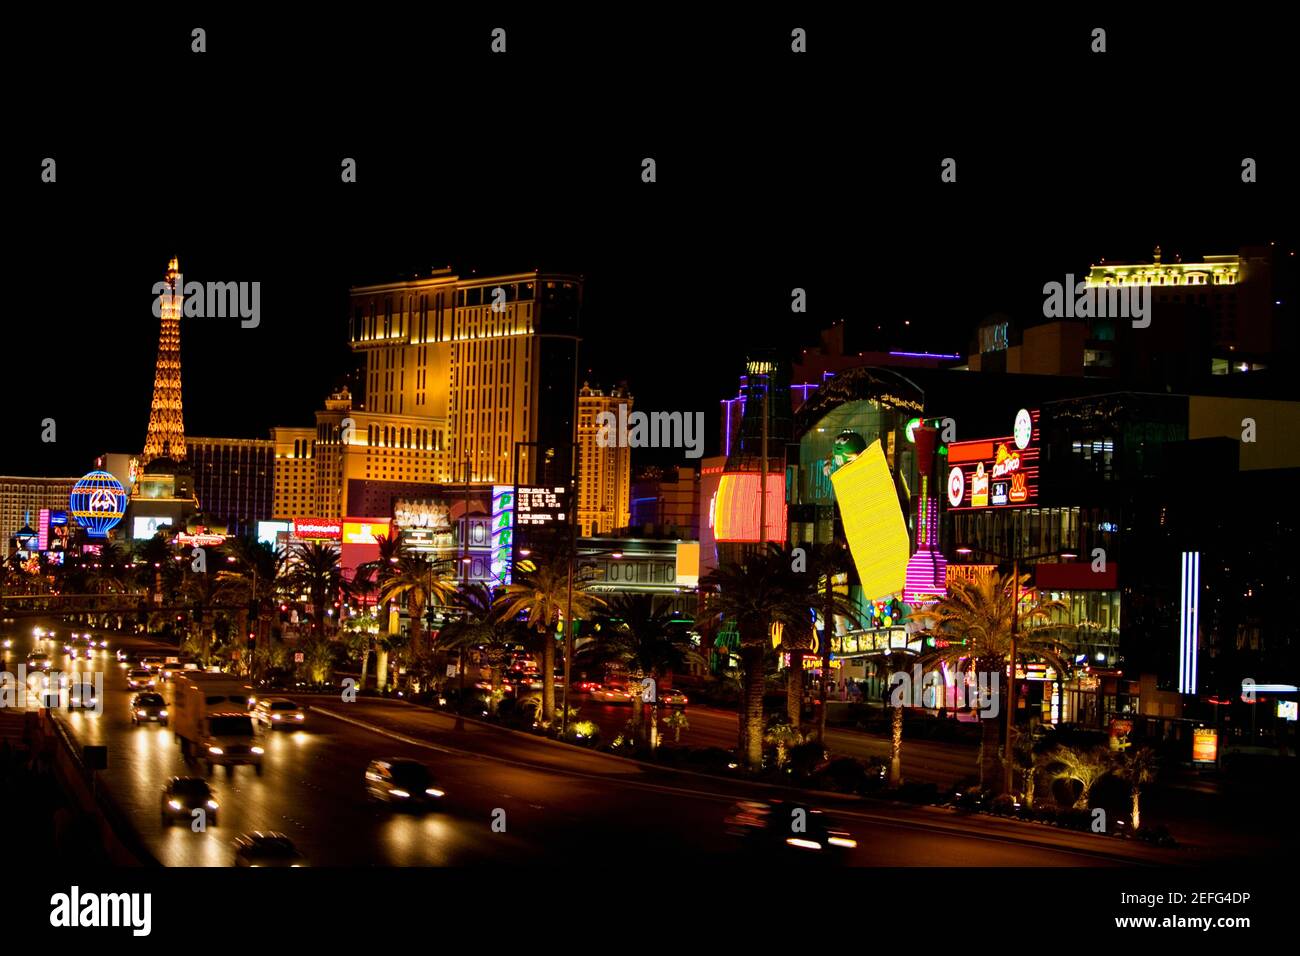 Buildings lit up at night, Las Vegas, Nevada, USA Stock Photo